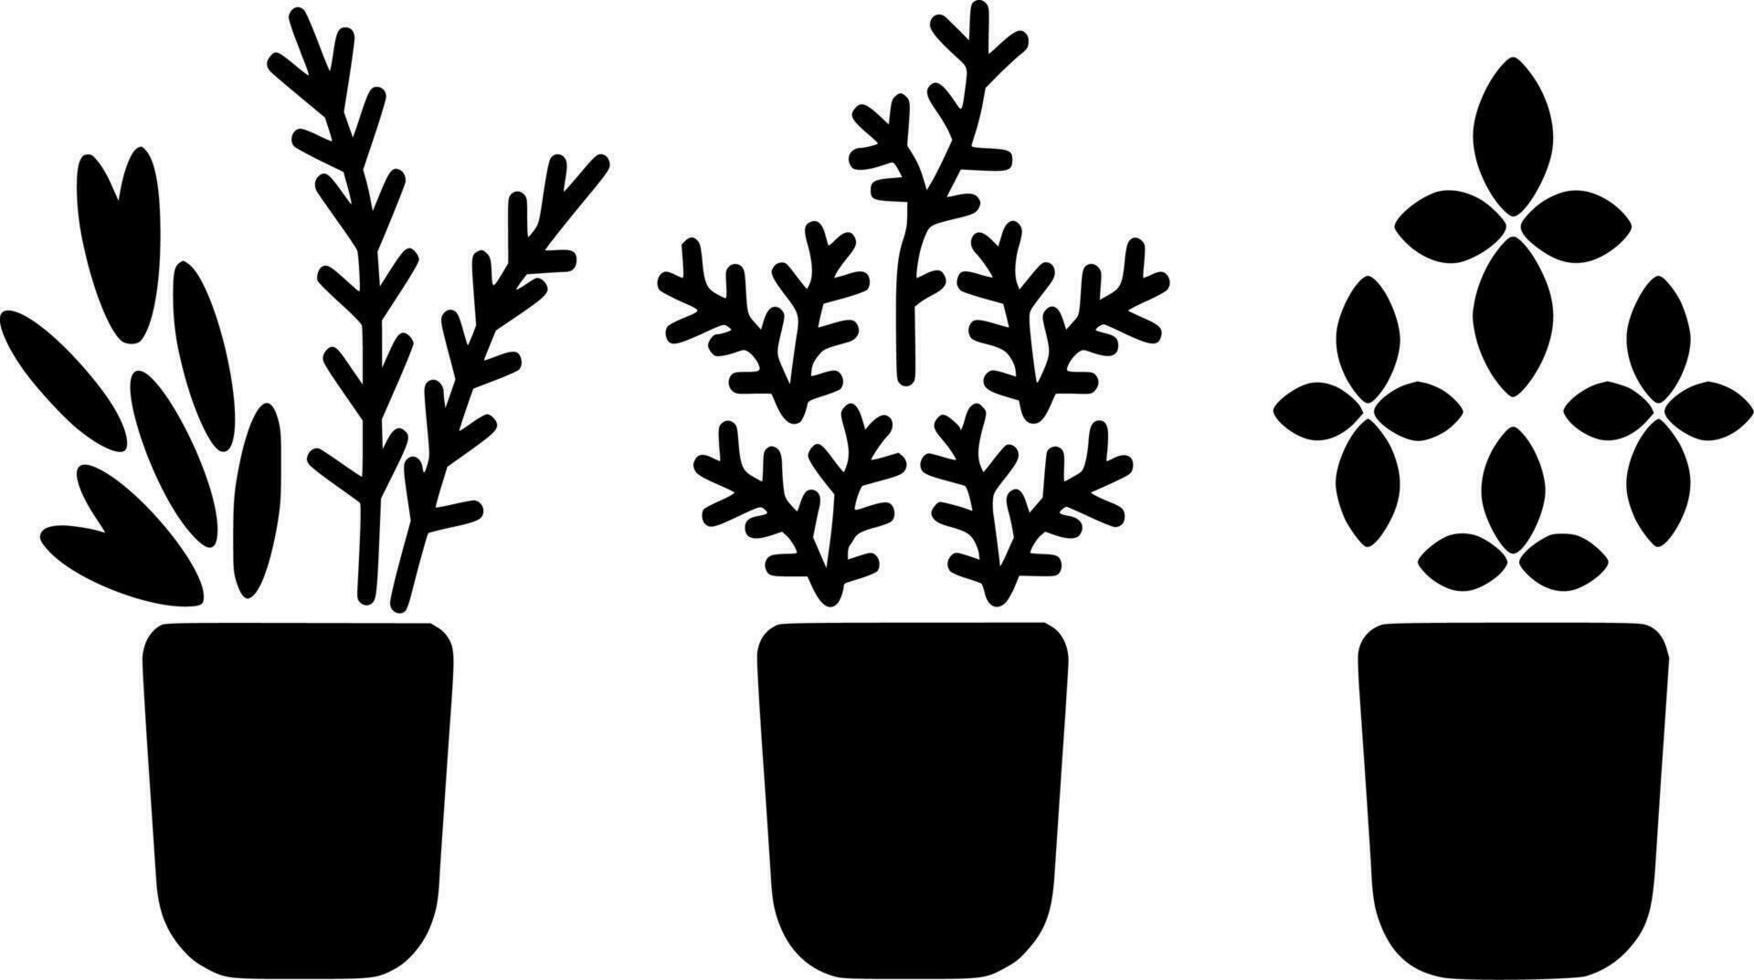 Vektor Silhouette von Zuhause Pflanze auf Weiß Hintergrund